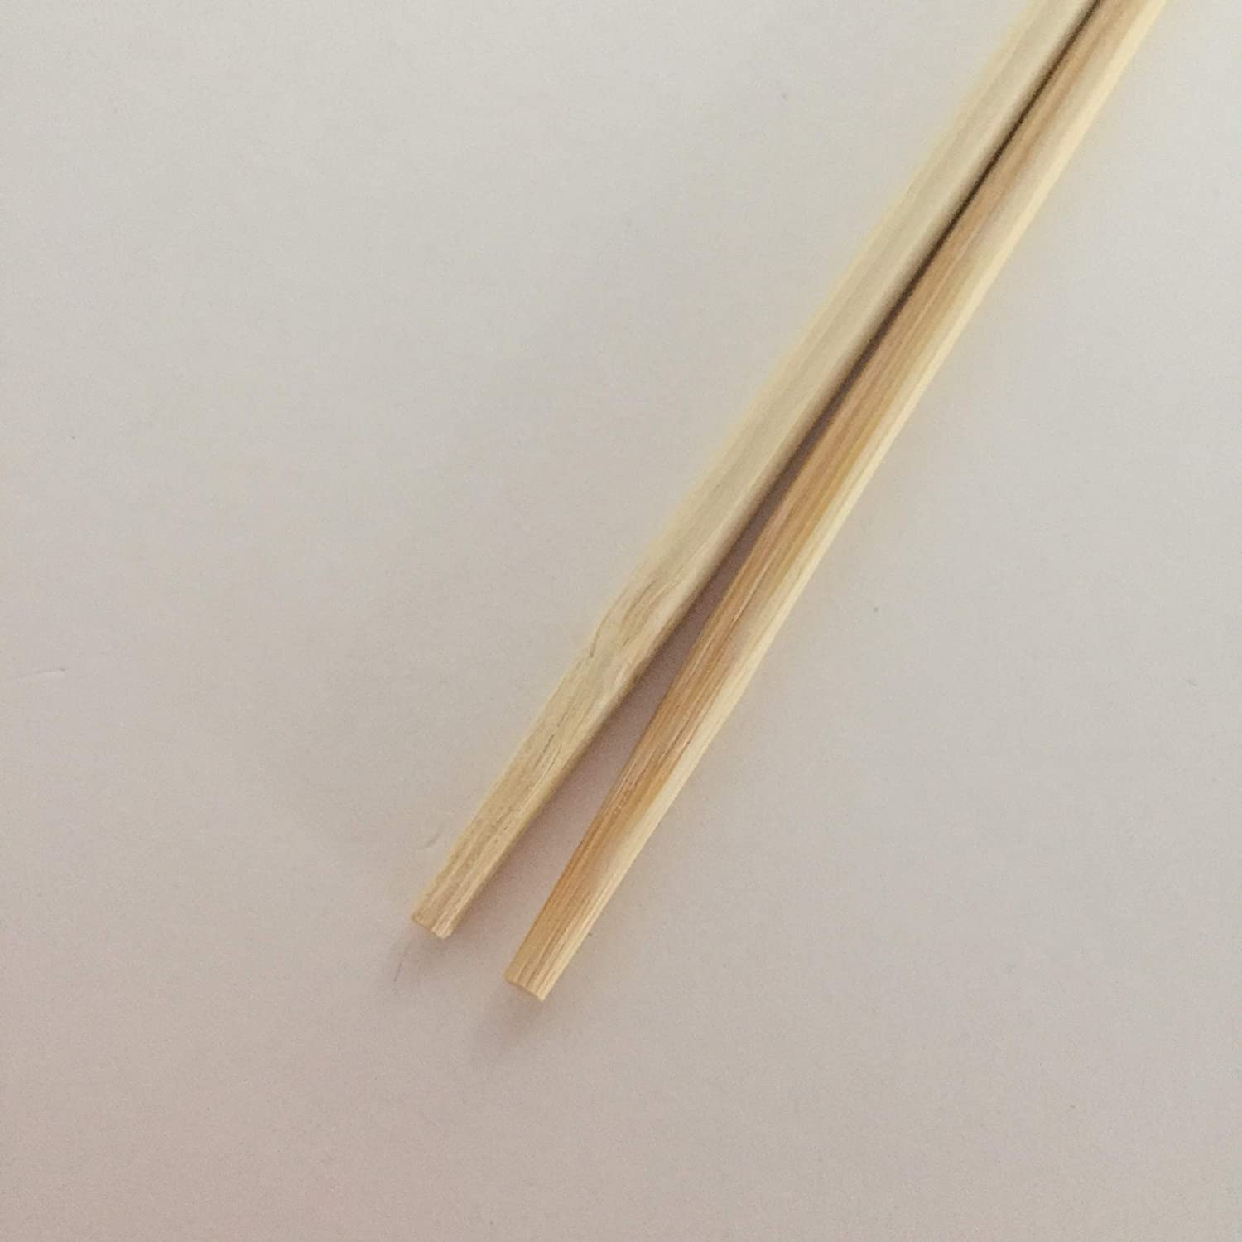 大和物産(ダイワブッサン) 竹丸完封箸の商品画像5 